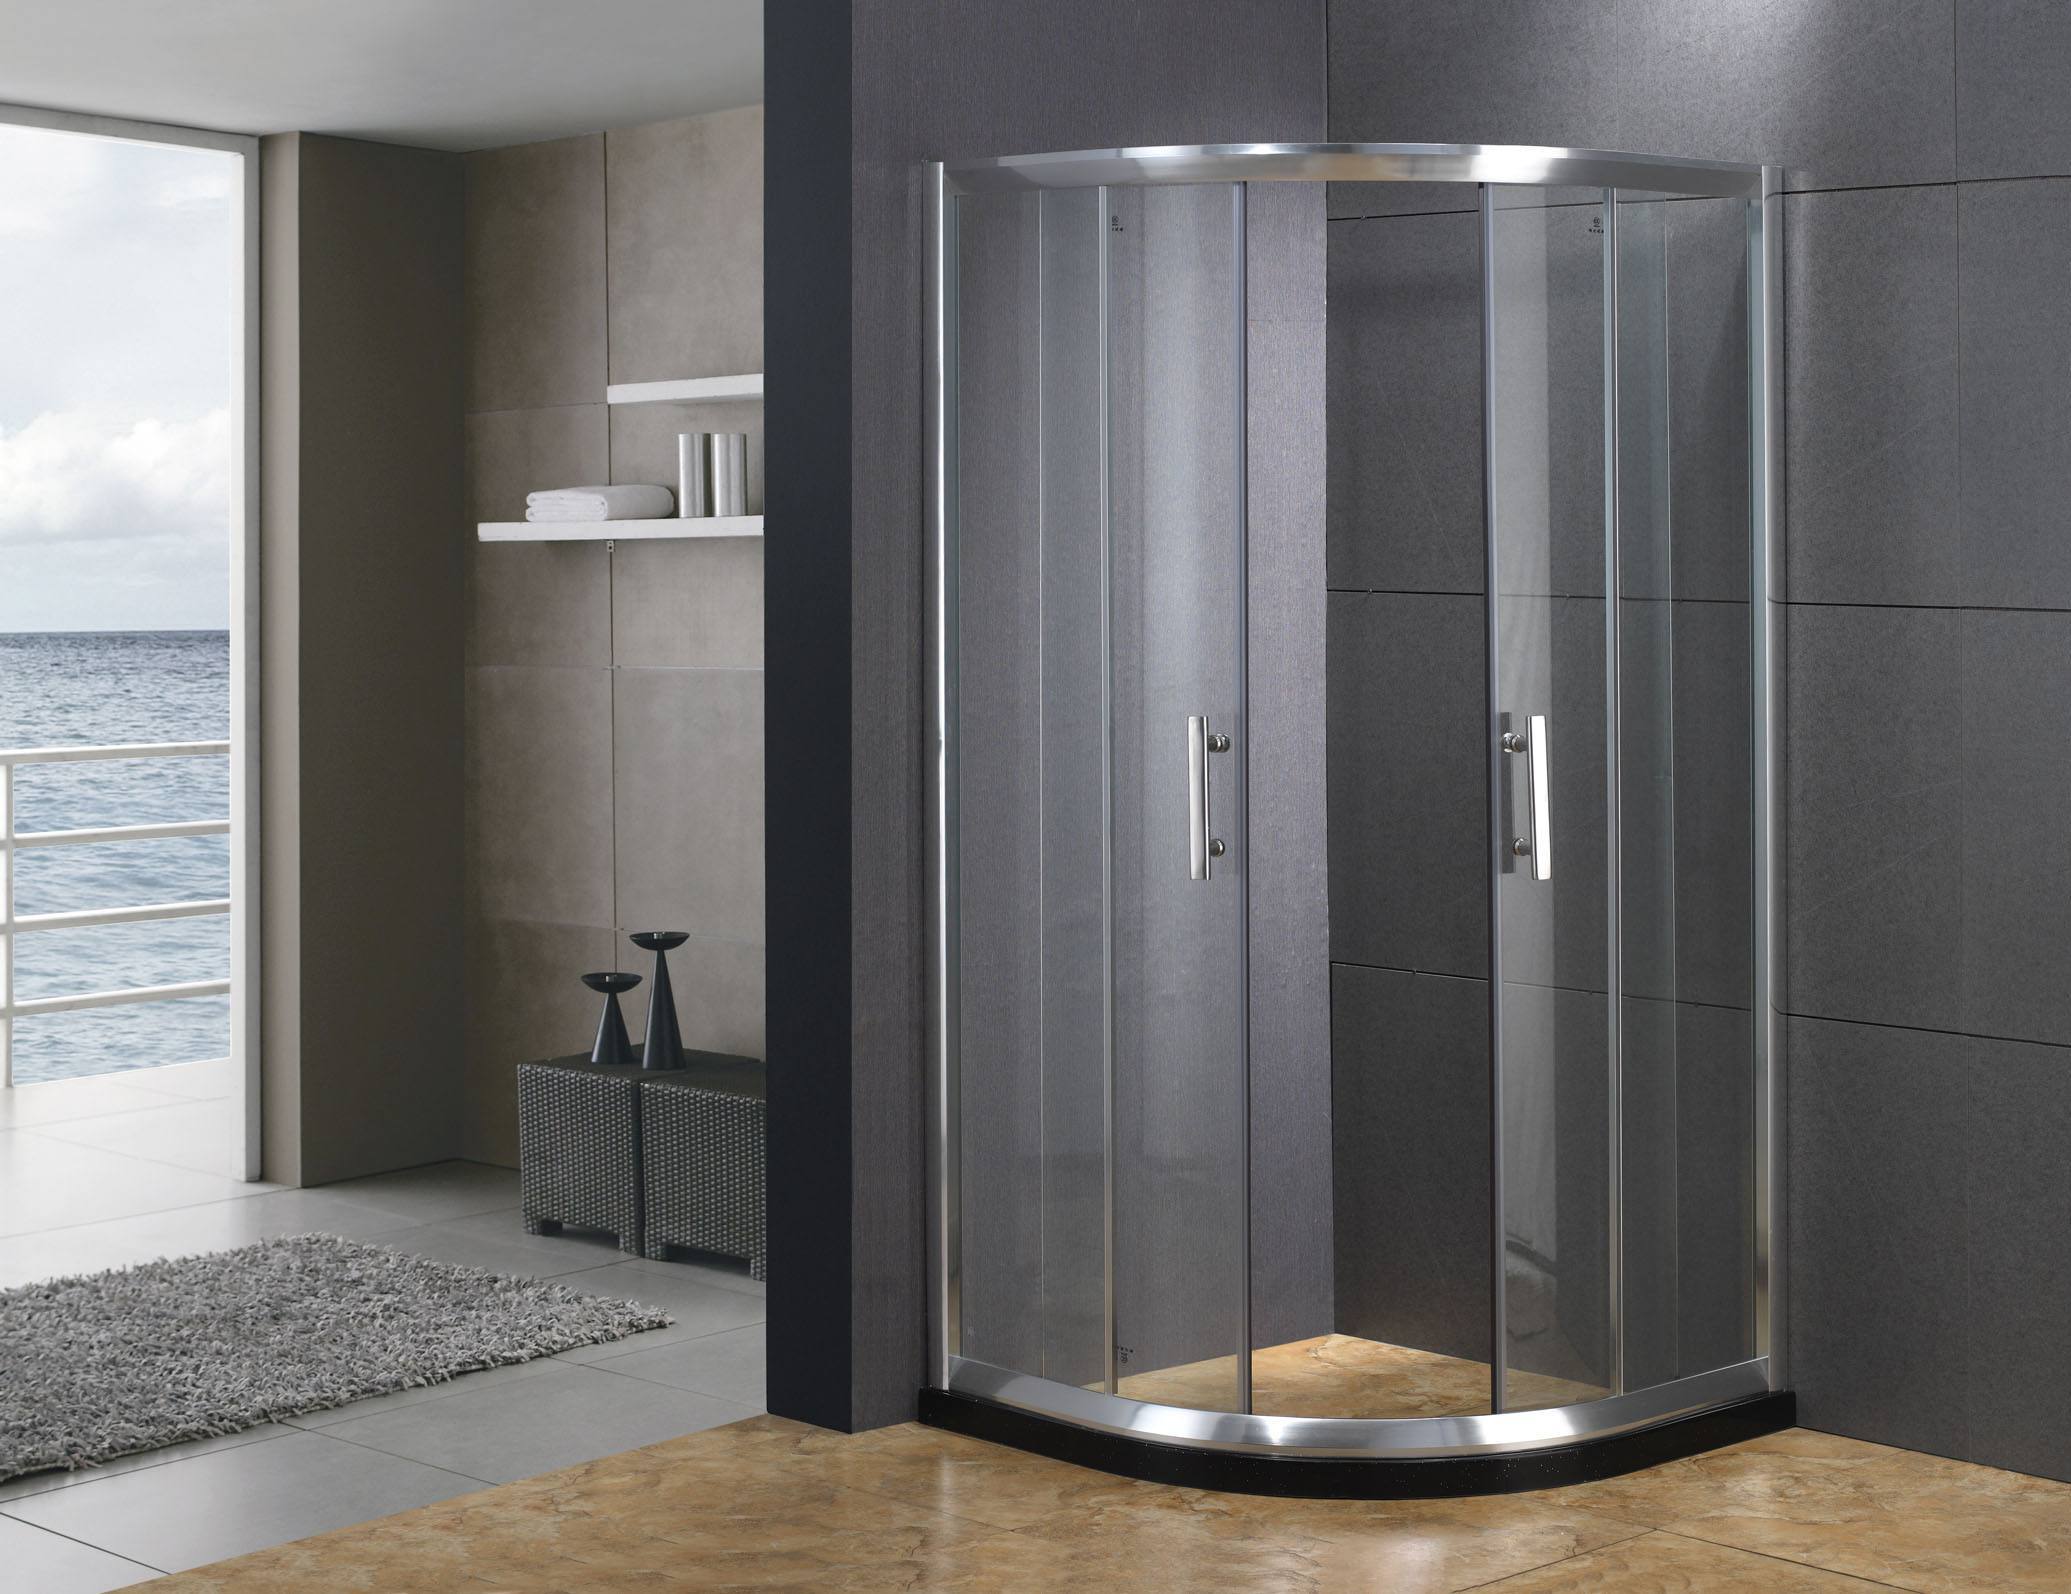 14平米卫生间现代风格淋浴房隔断装修效果图